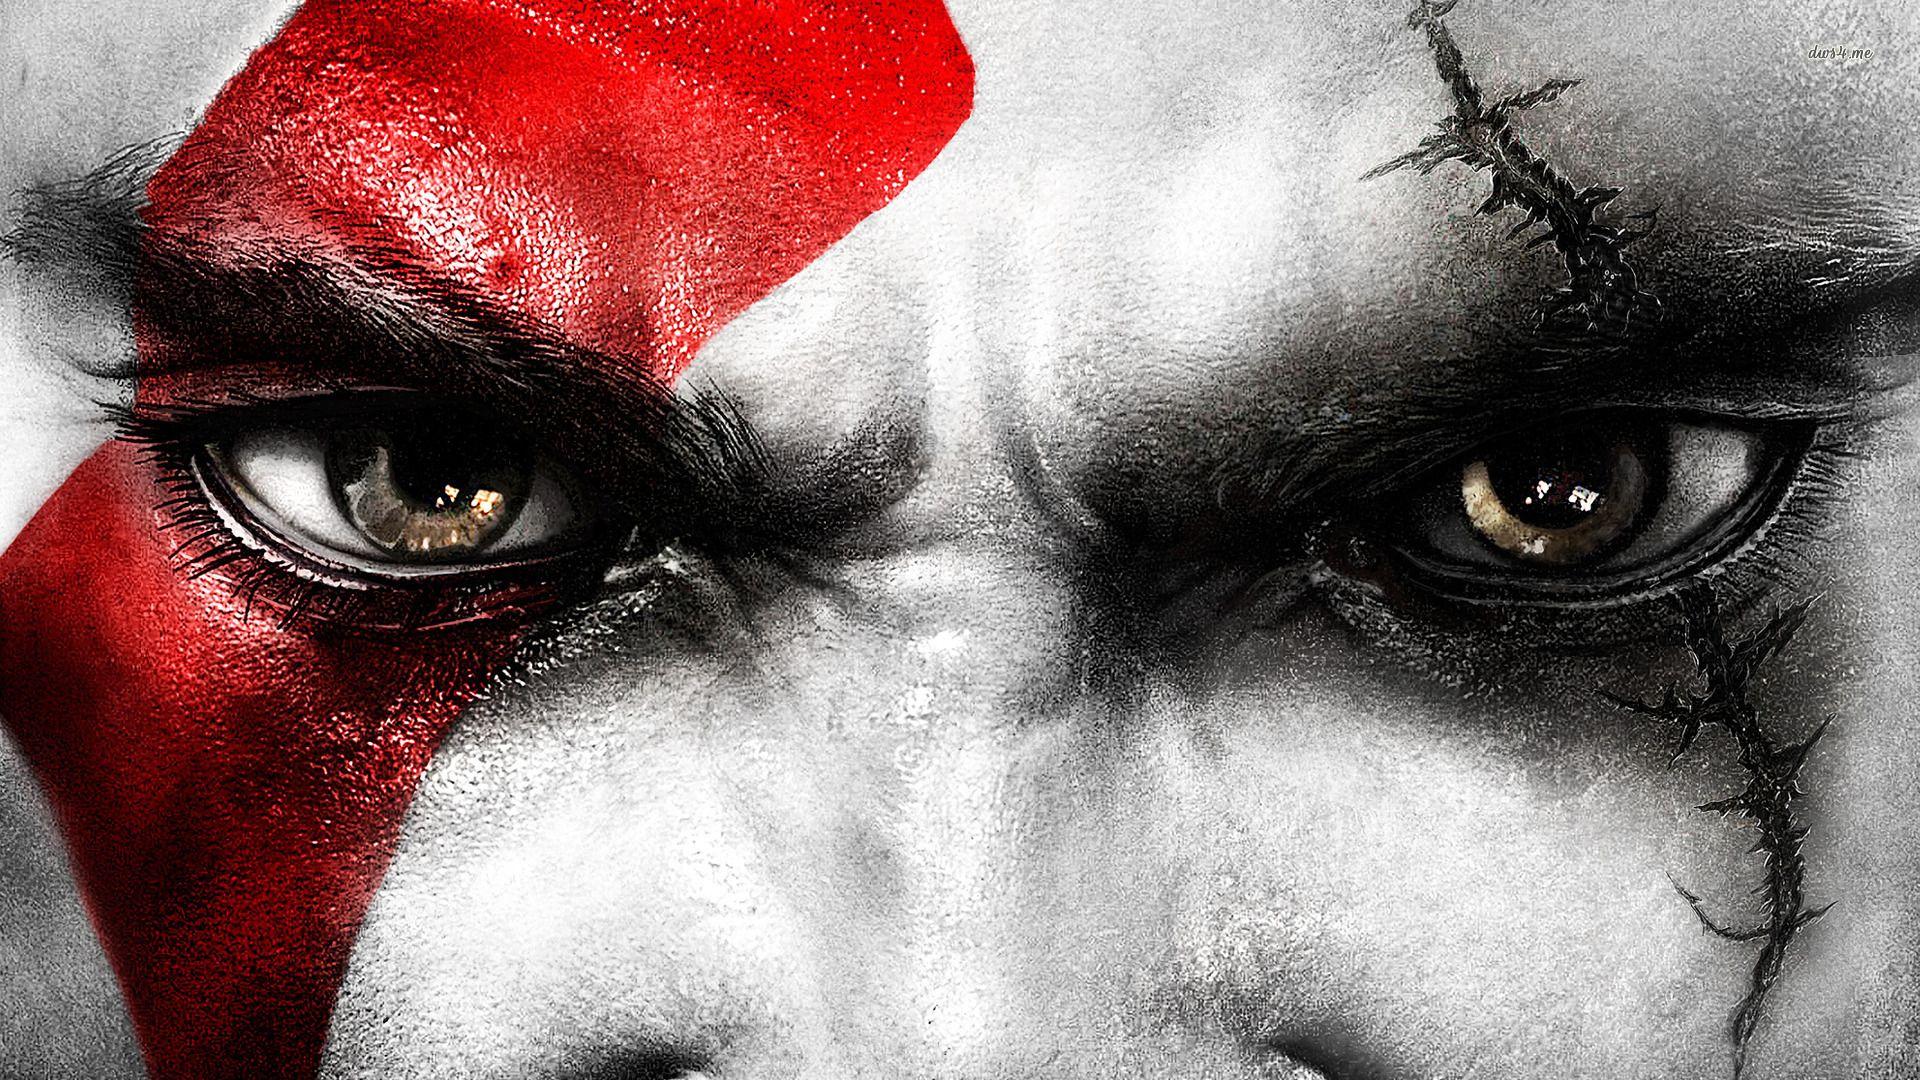 kratos god of war. Kratos of War 3 wallpaper. Kratos